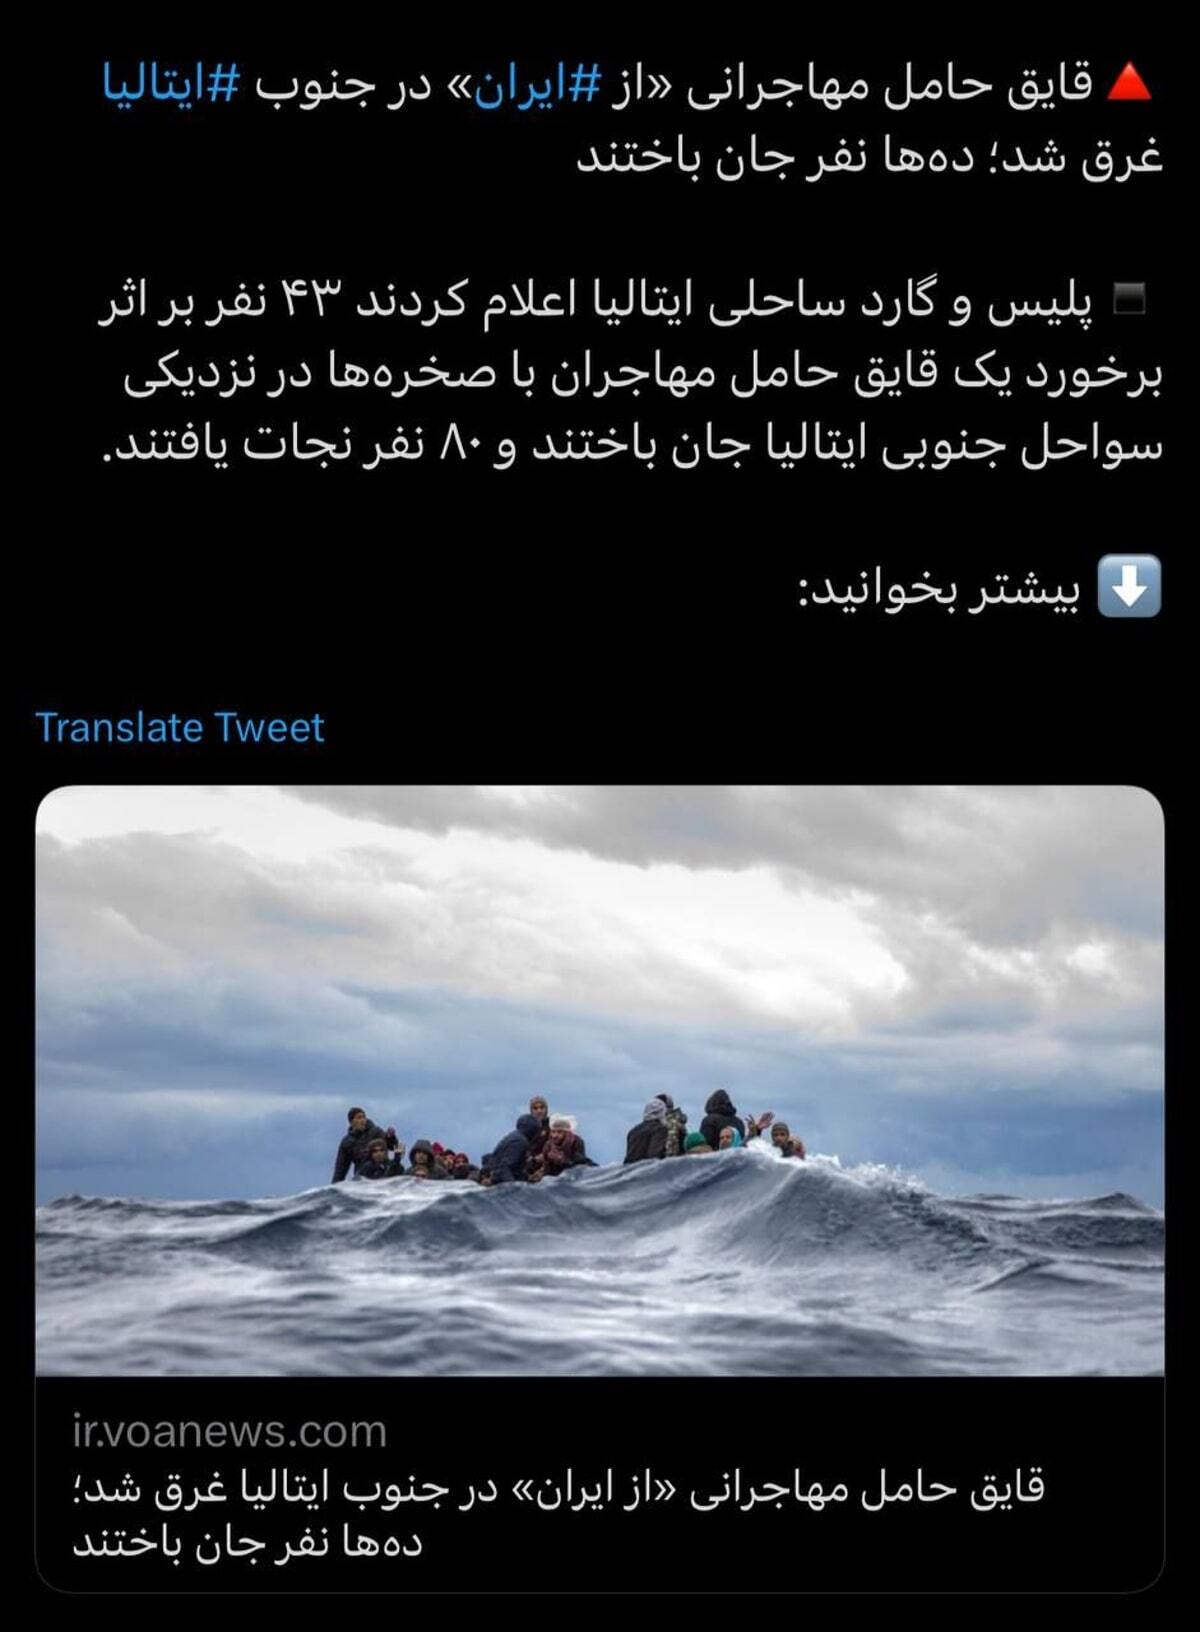 قایق حامل مهاجرانی از ‎ایران در جنوب ‎ایتالیا غرق شد + عکس